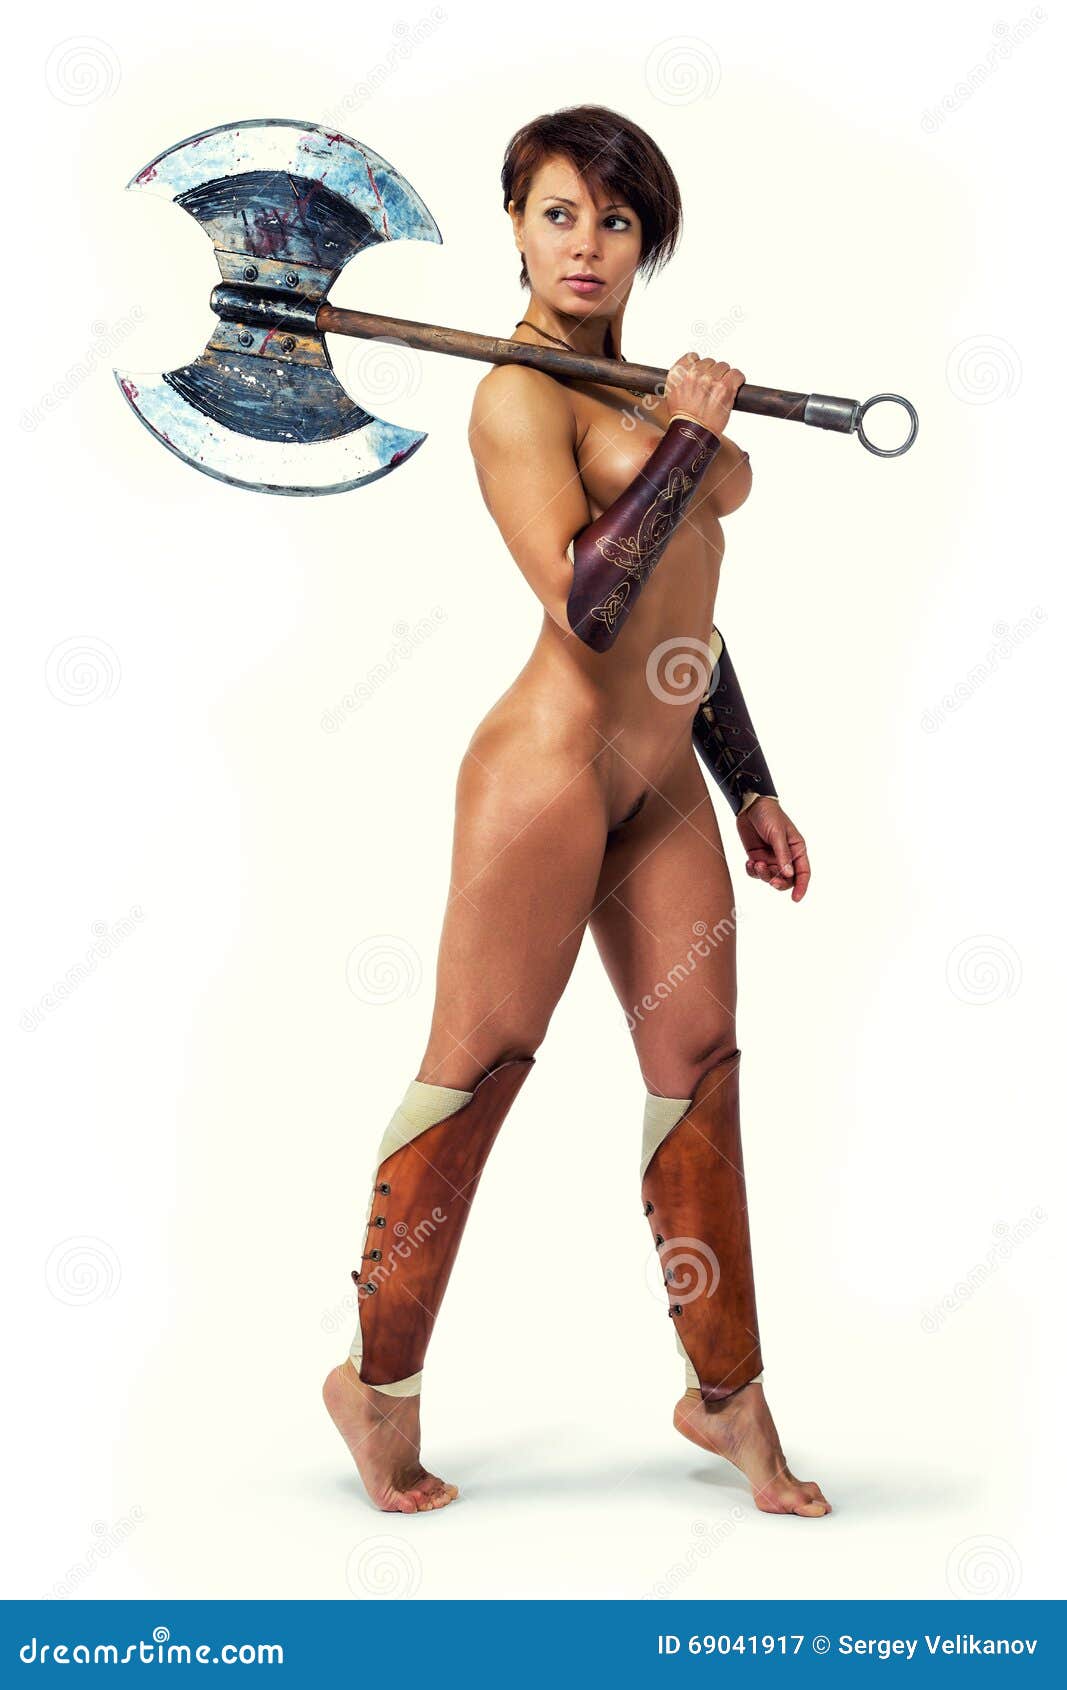 billy joe sloan recommends nude warrior women pic